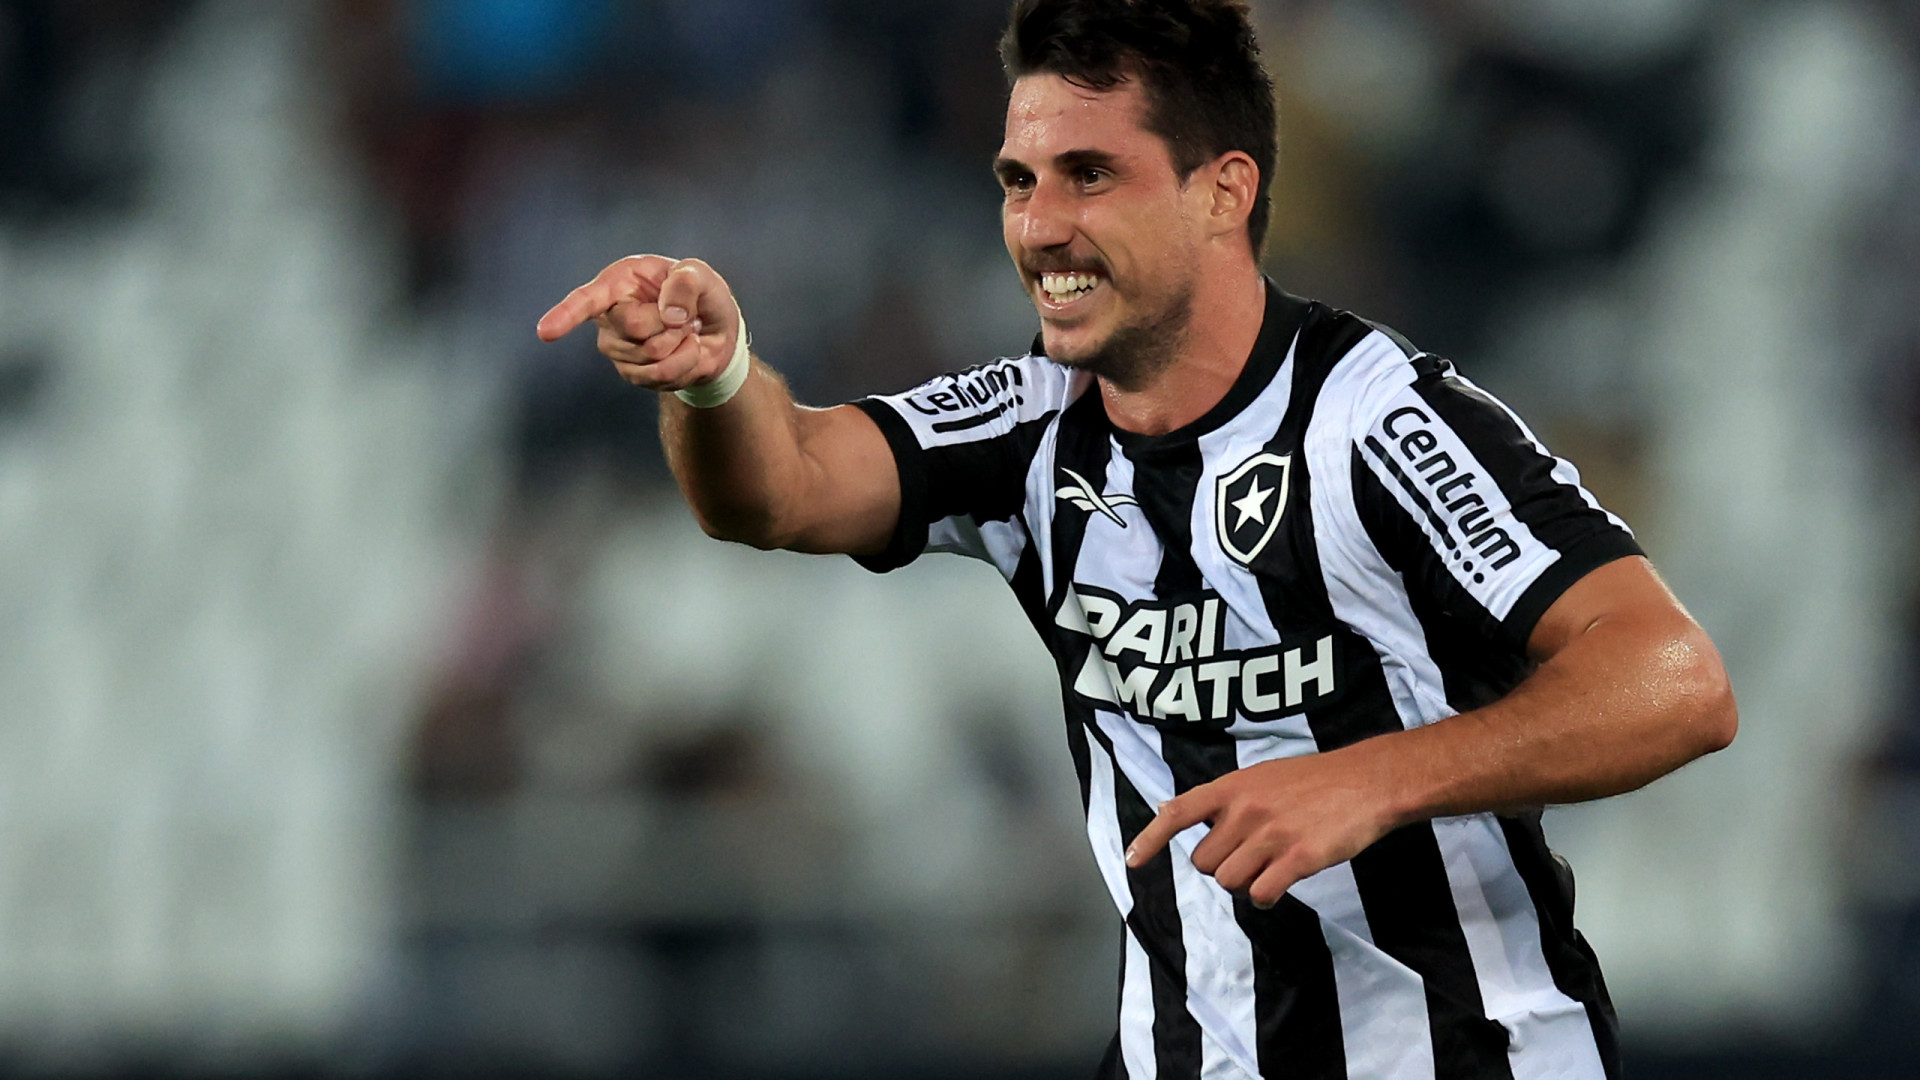 Com Engenhão lotado, Botafogo enfrenta o Cuiabá para manter distância na liderança